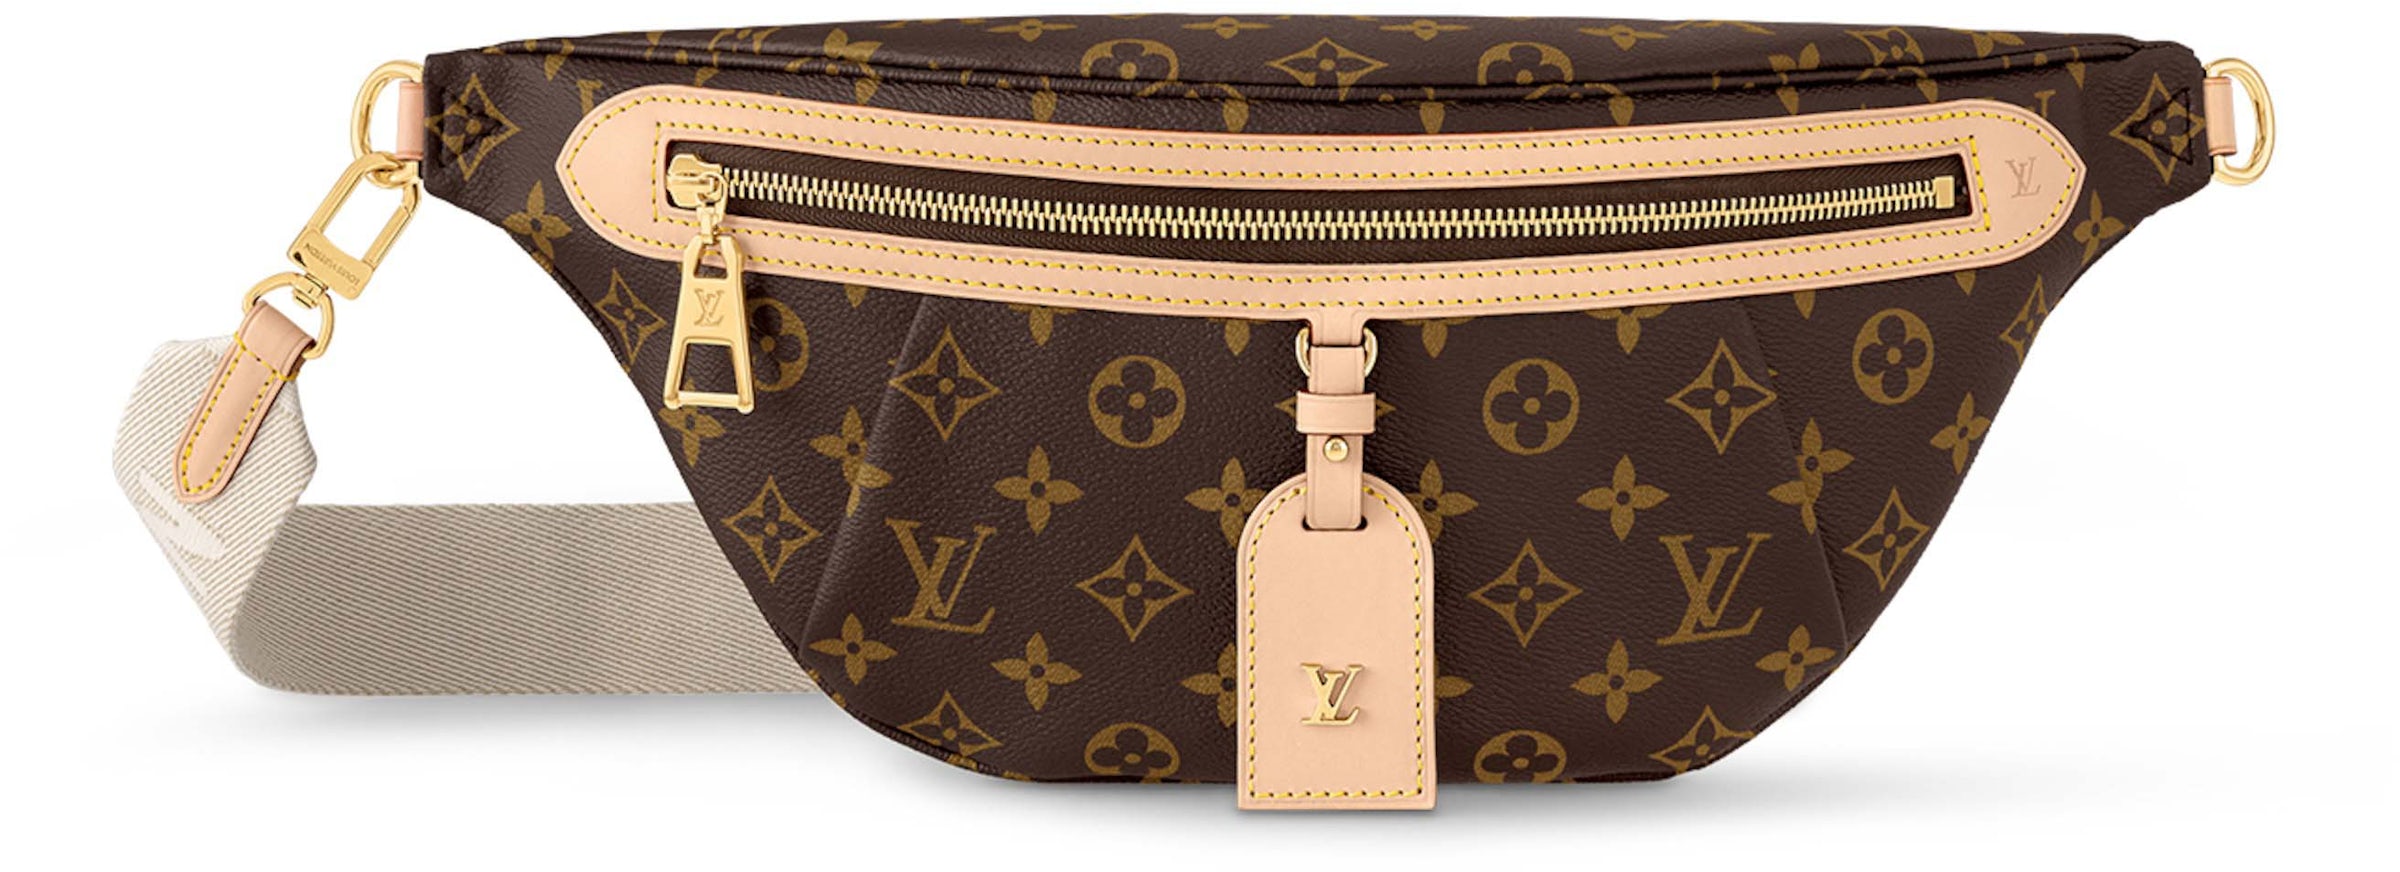 Louis Vuitton High Rise Bumbag Monogram